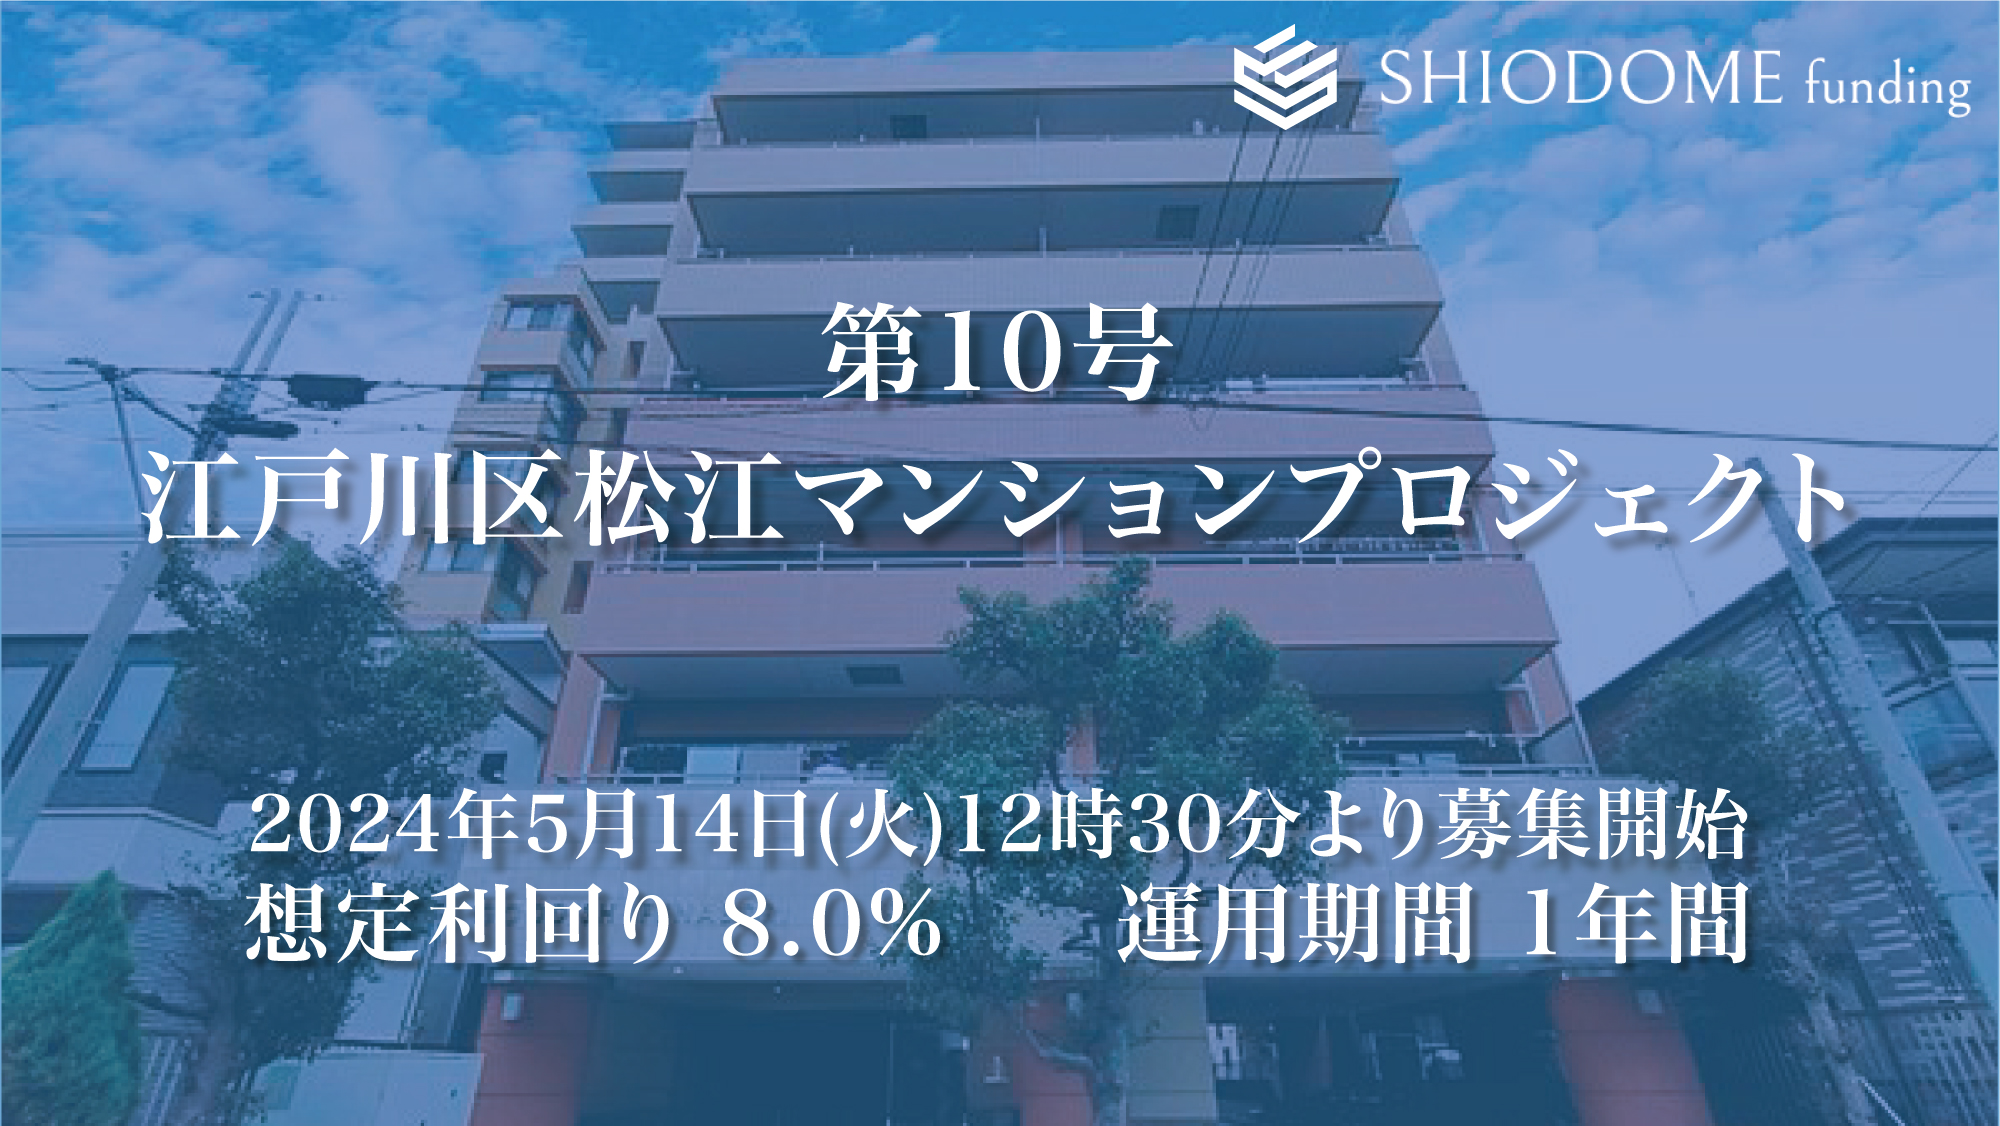 「汐留funding」 第10号江戸川区松江マンションプロジェクトの募集概要を公開のサブ画像1